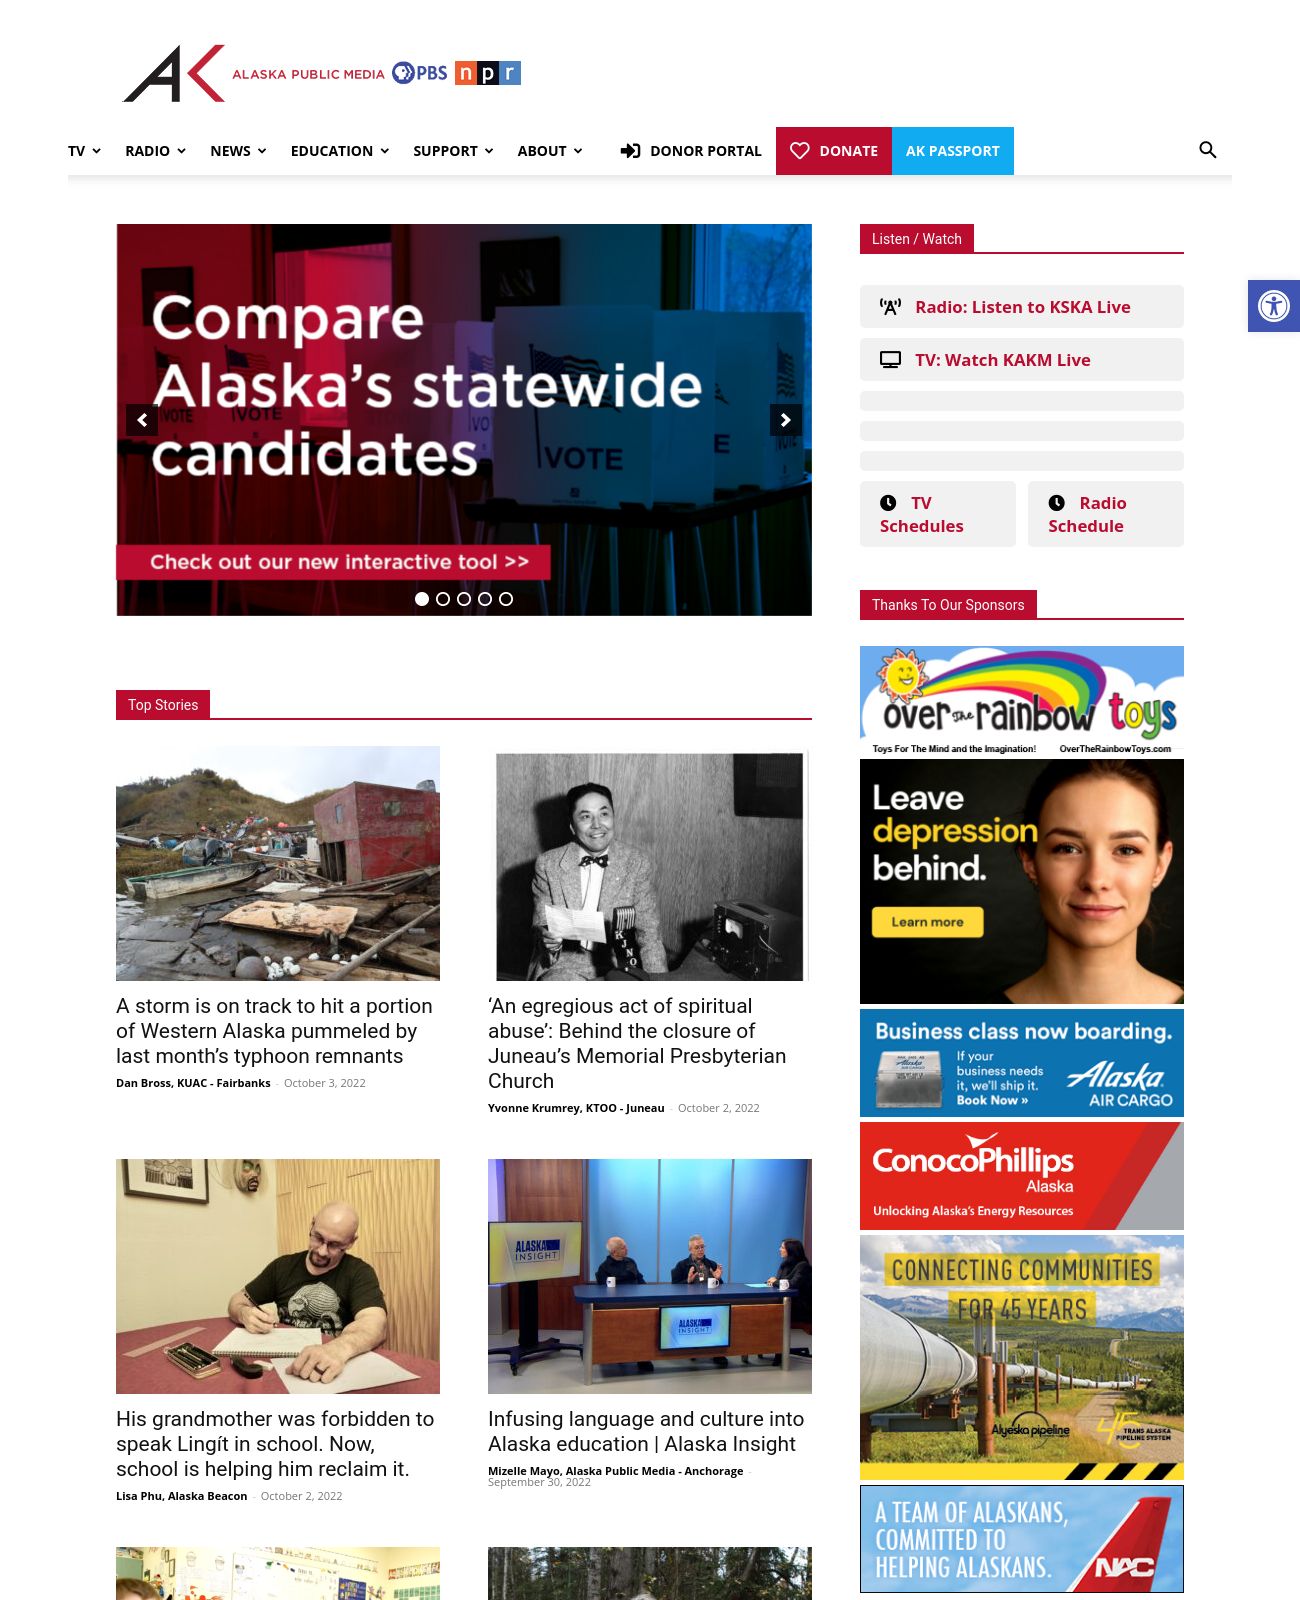 Alaska Public Media at 2022-10-03 14:54:15-08:00 local time